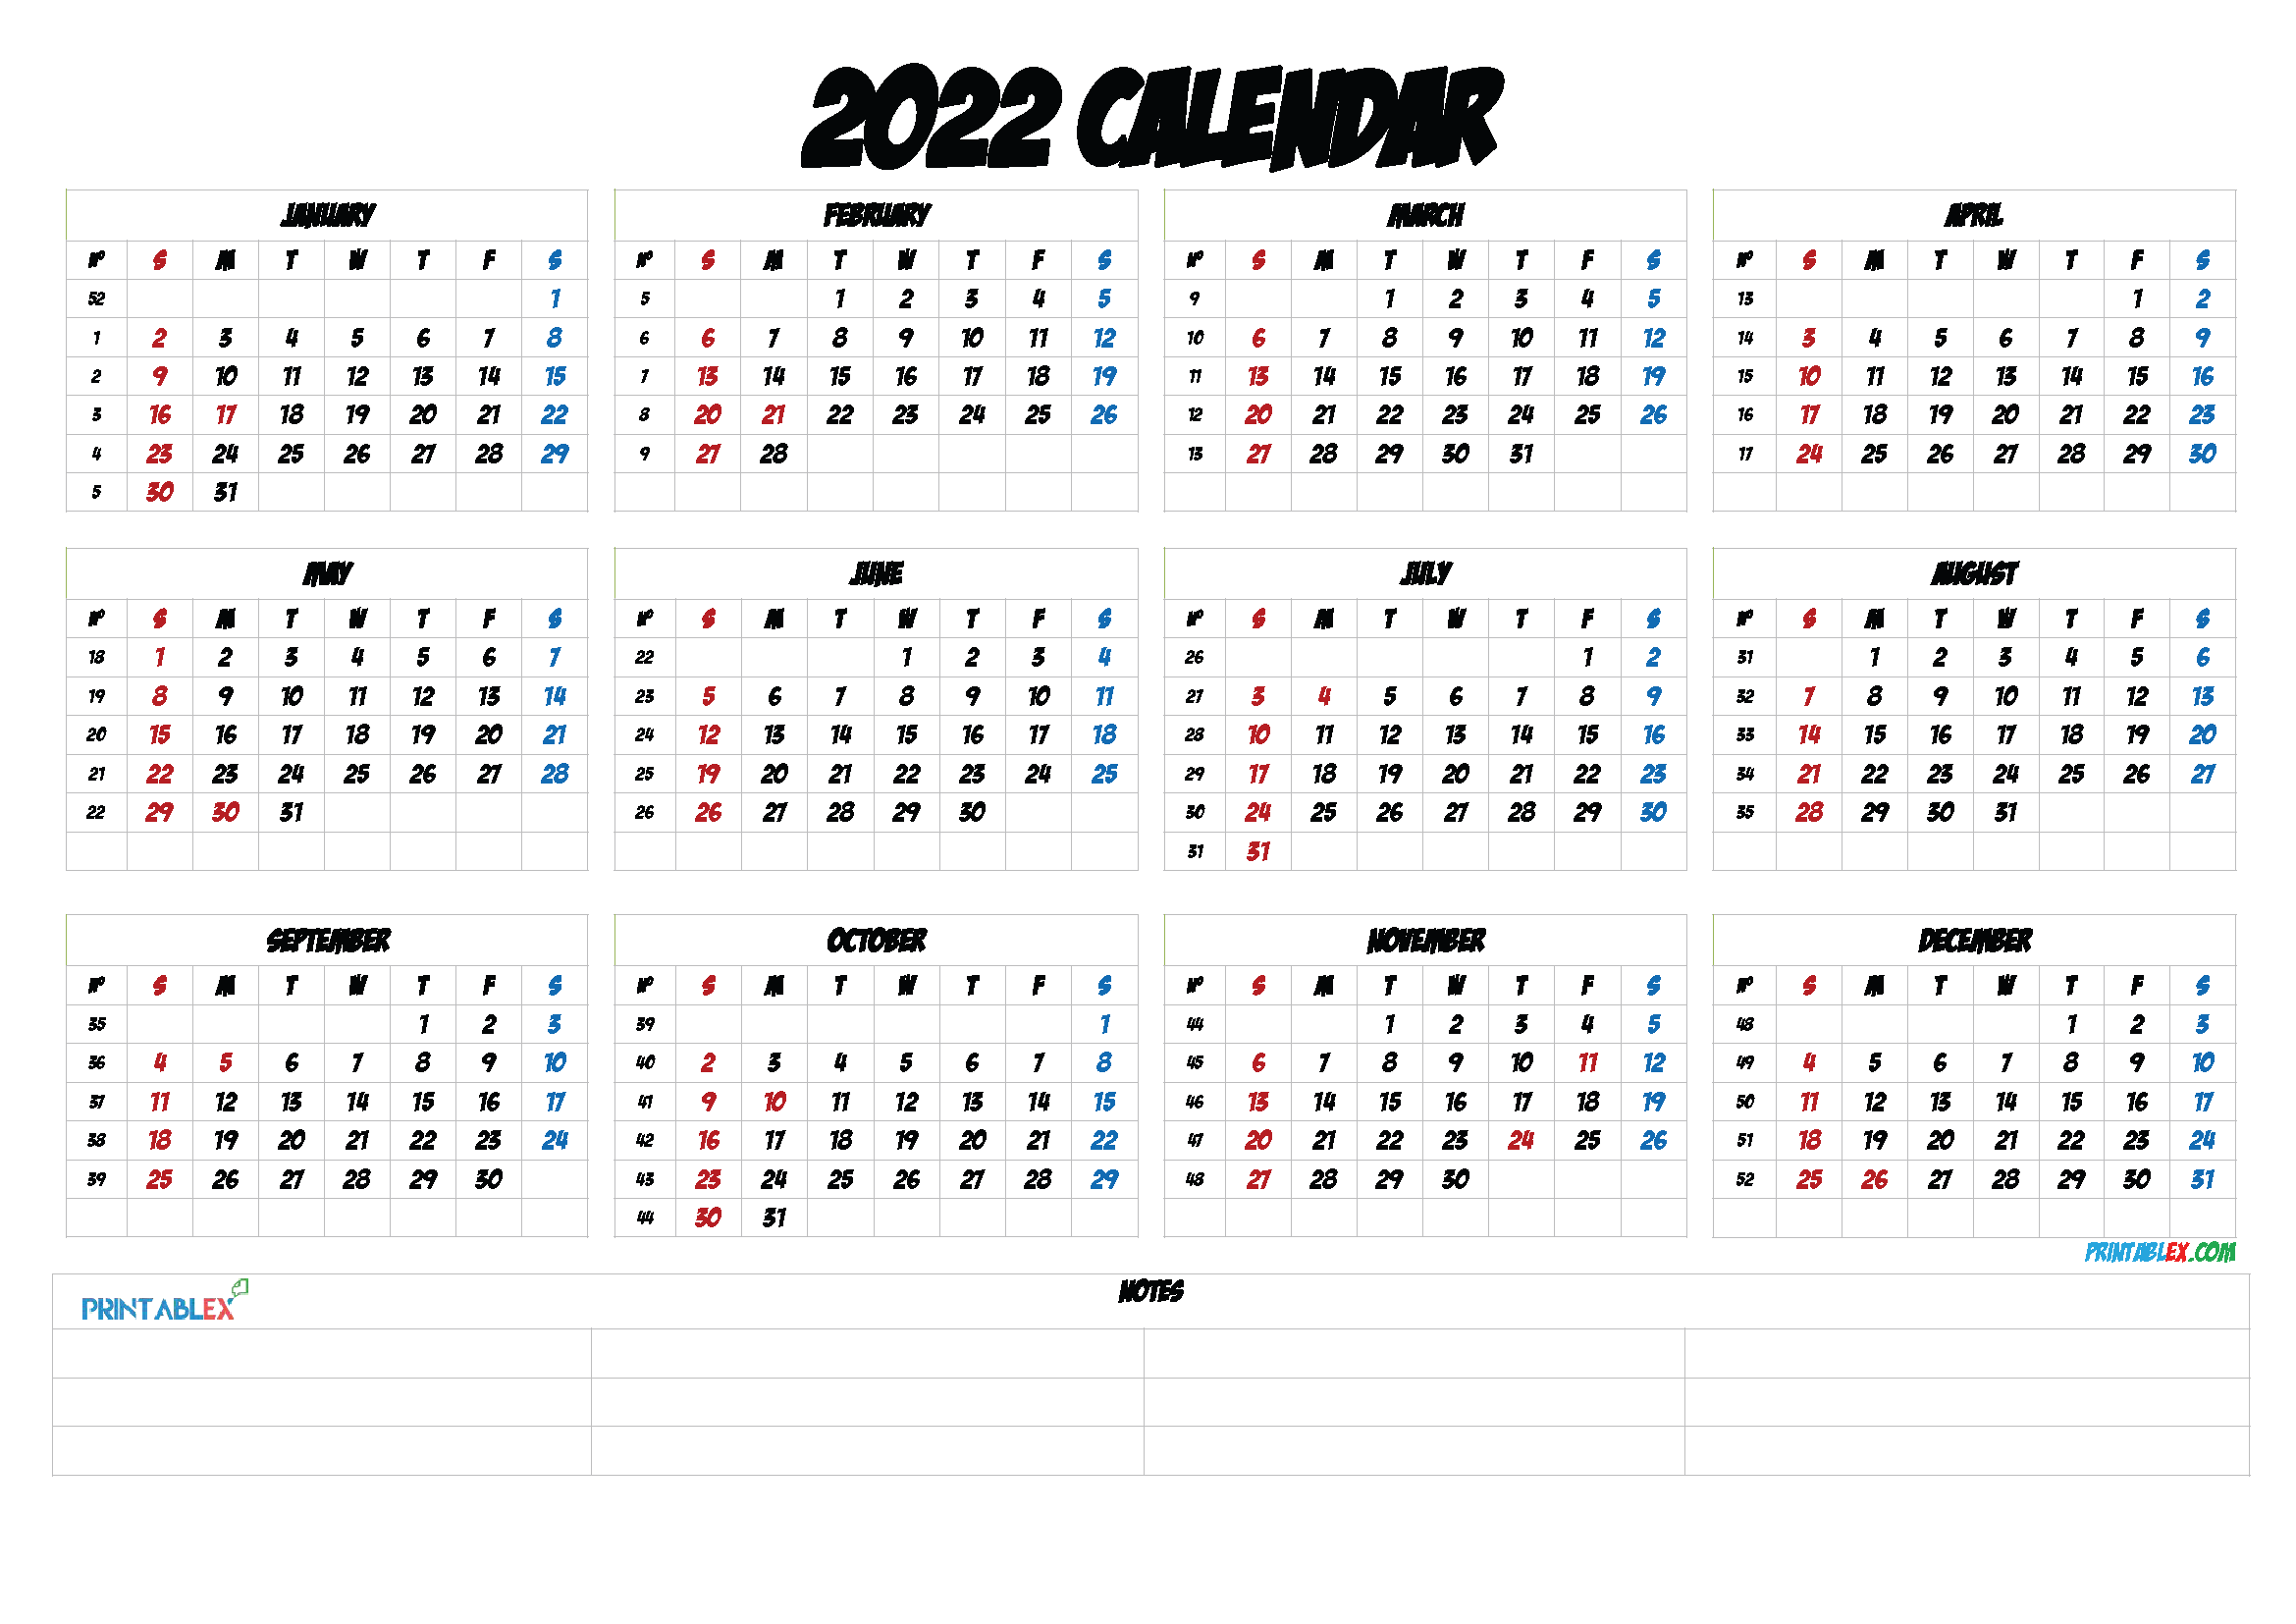 2022 Calendar With Week Numbers Printable 22ytw124 Free Printable 2021 Monthly Calendar With Holidays